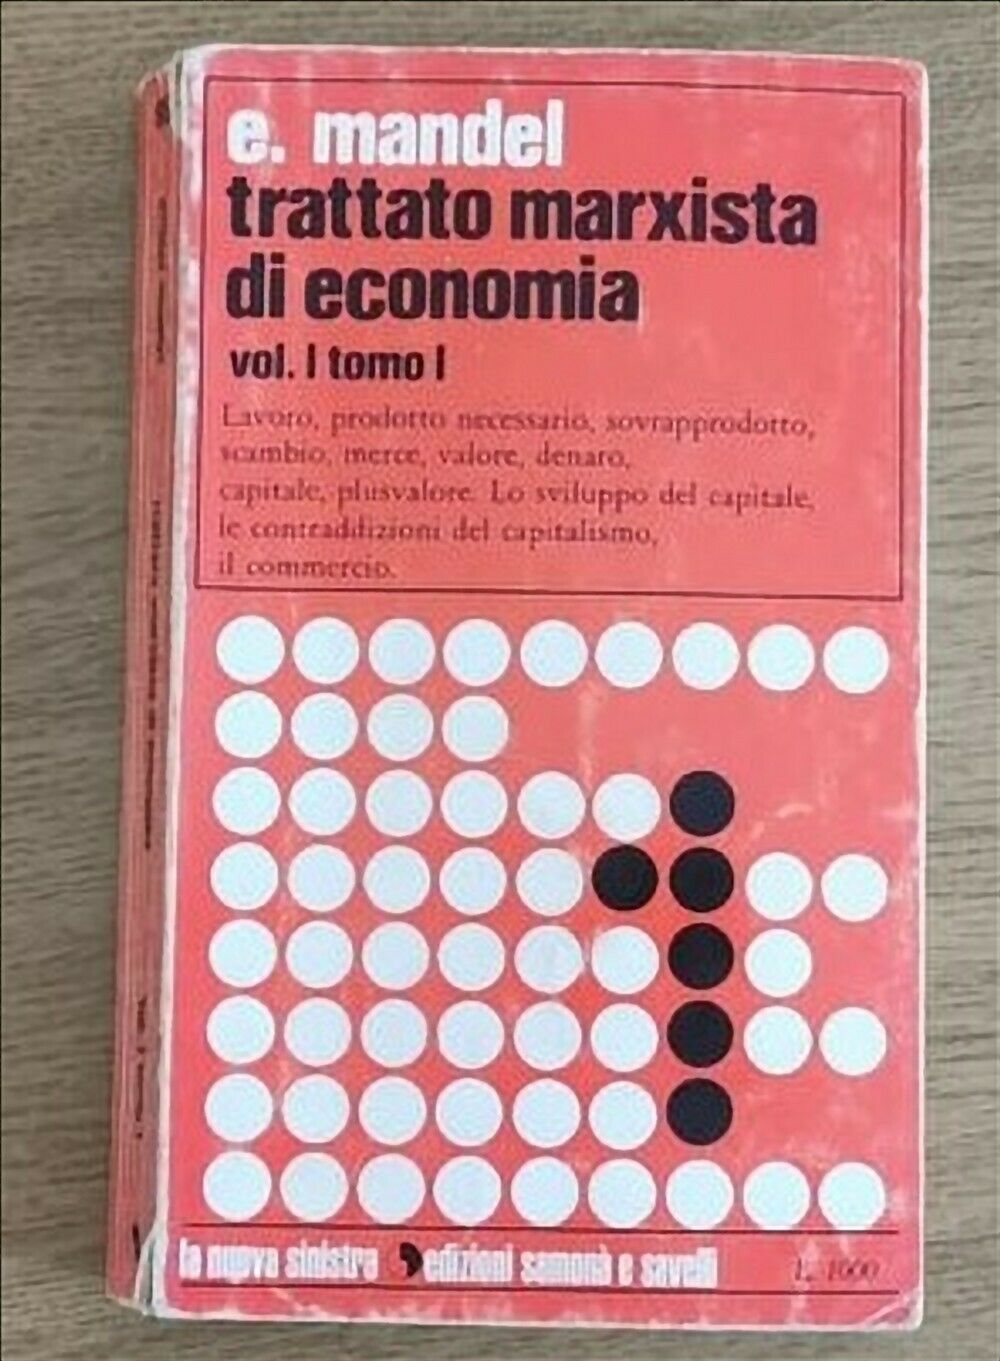 Trattato marxista di economia Vol 1 - E. Mandel - Samon? - 1972 - AR